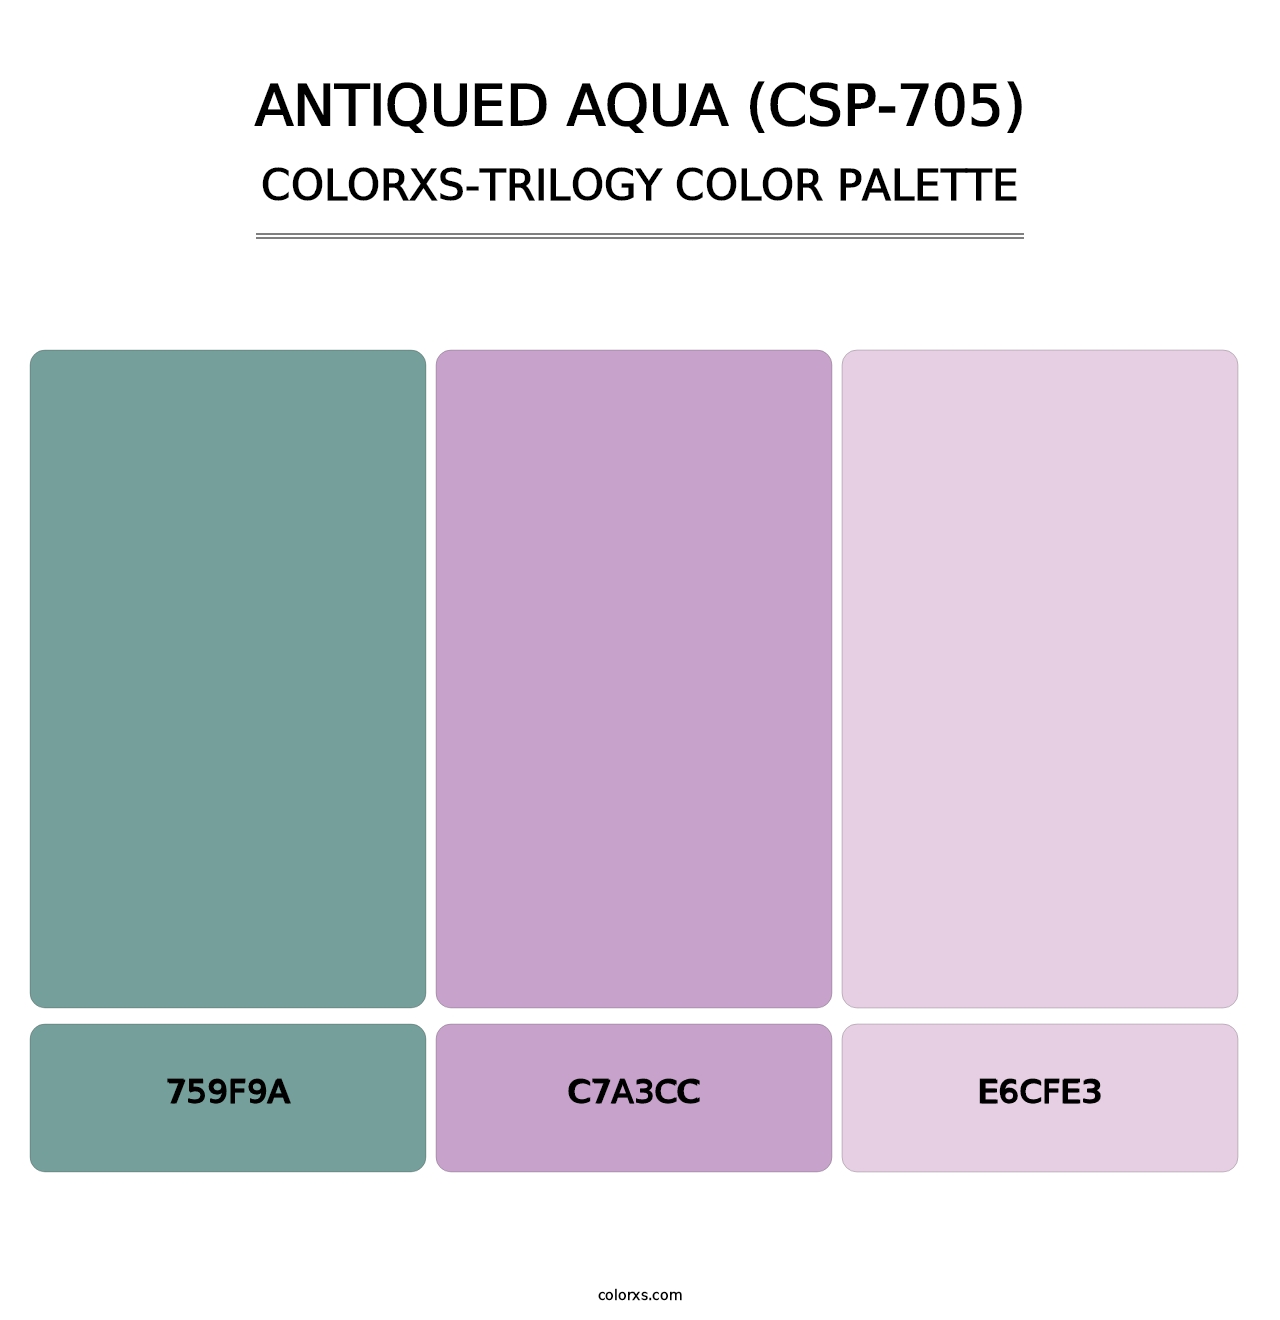 Antiqued Aqua (CSP-705) - Colorxs Trilogy Palette